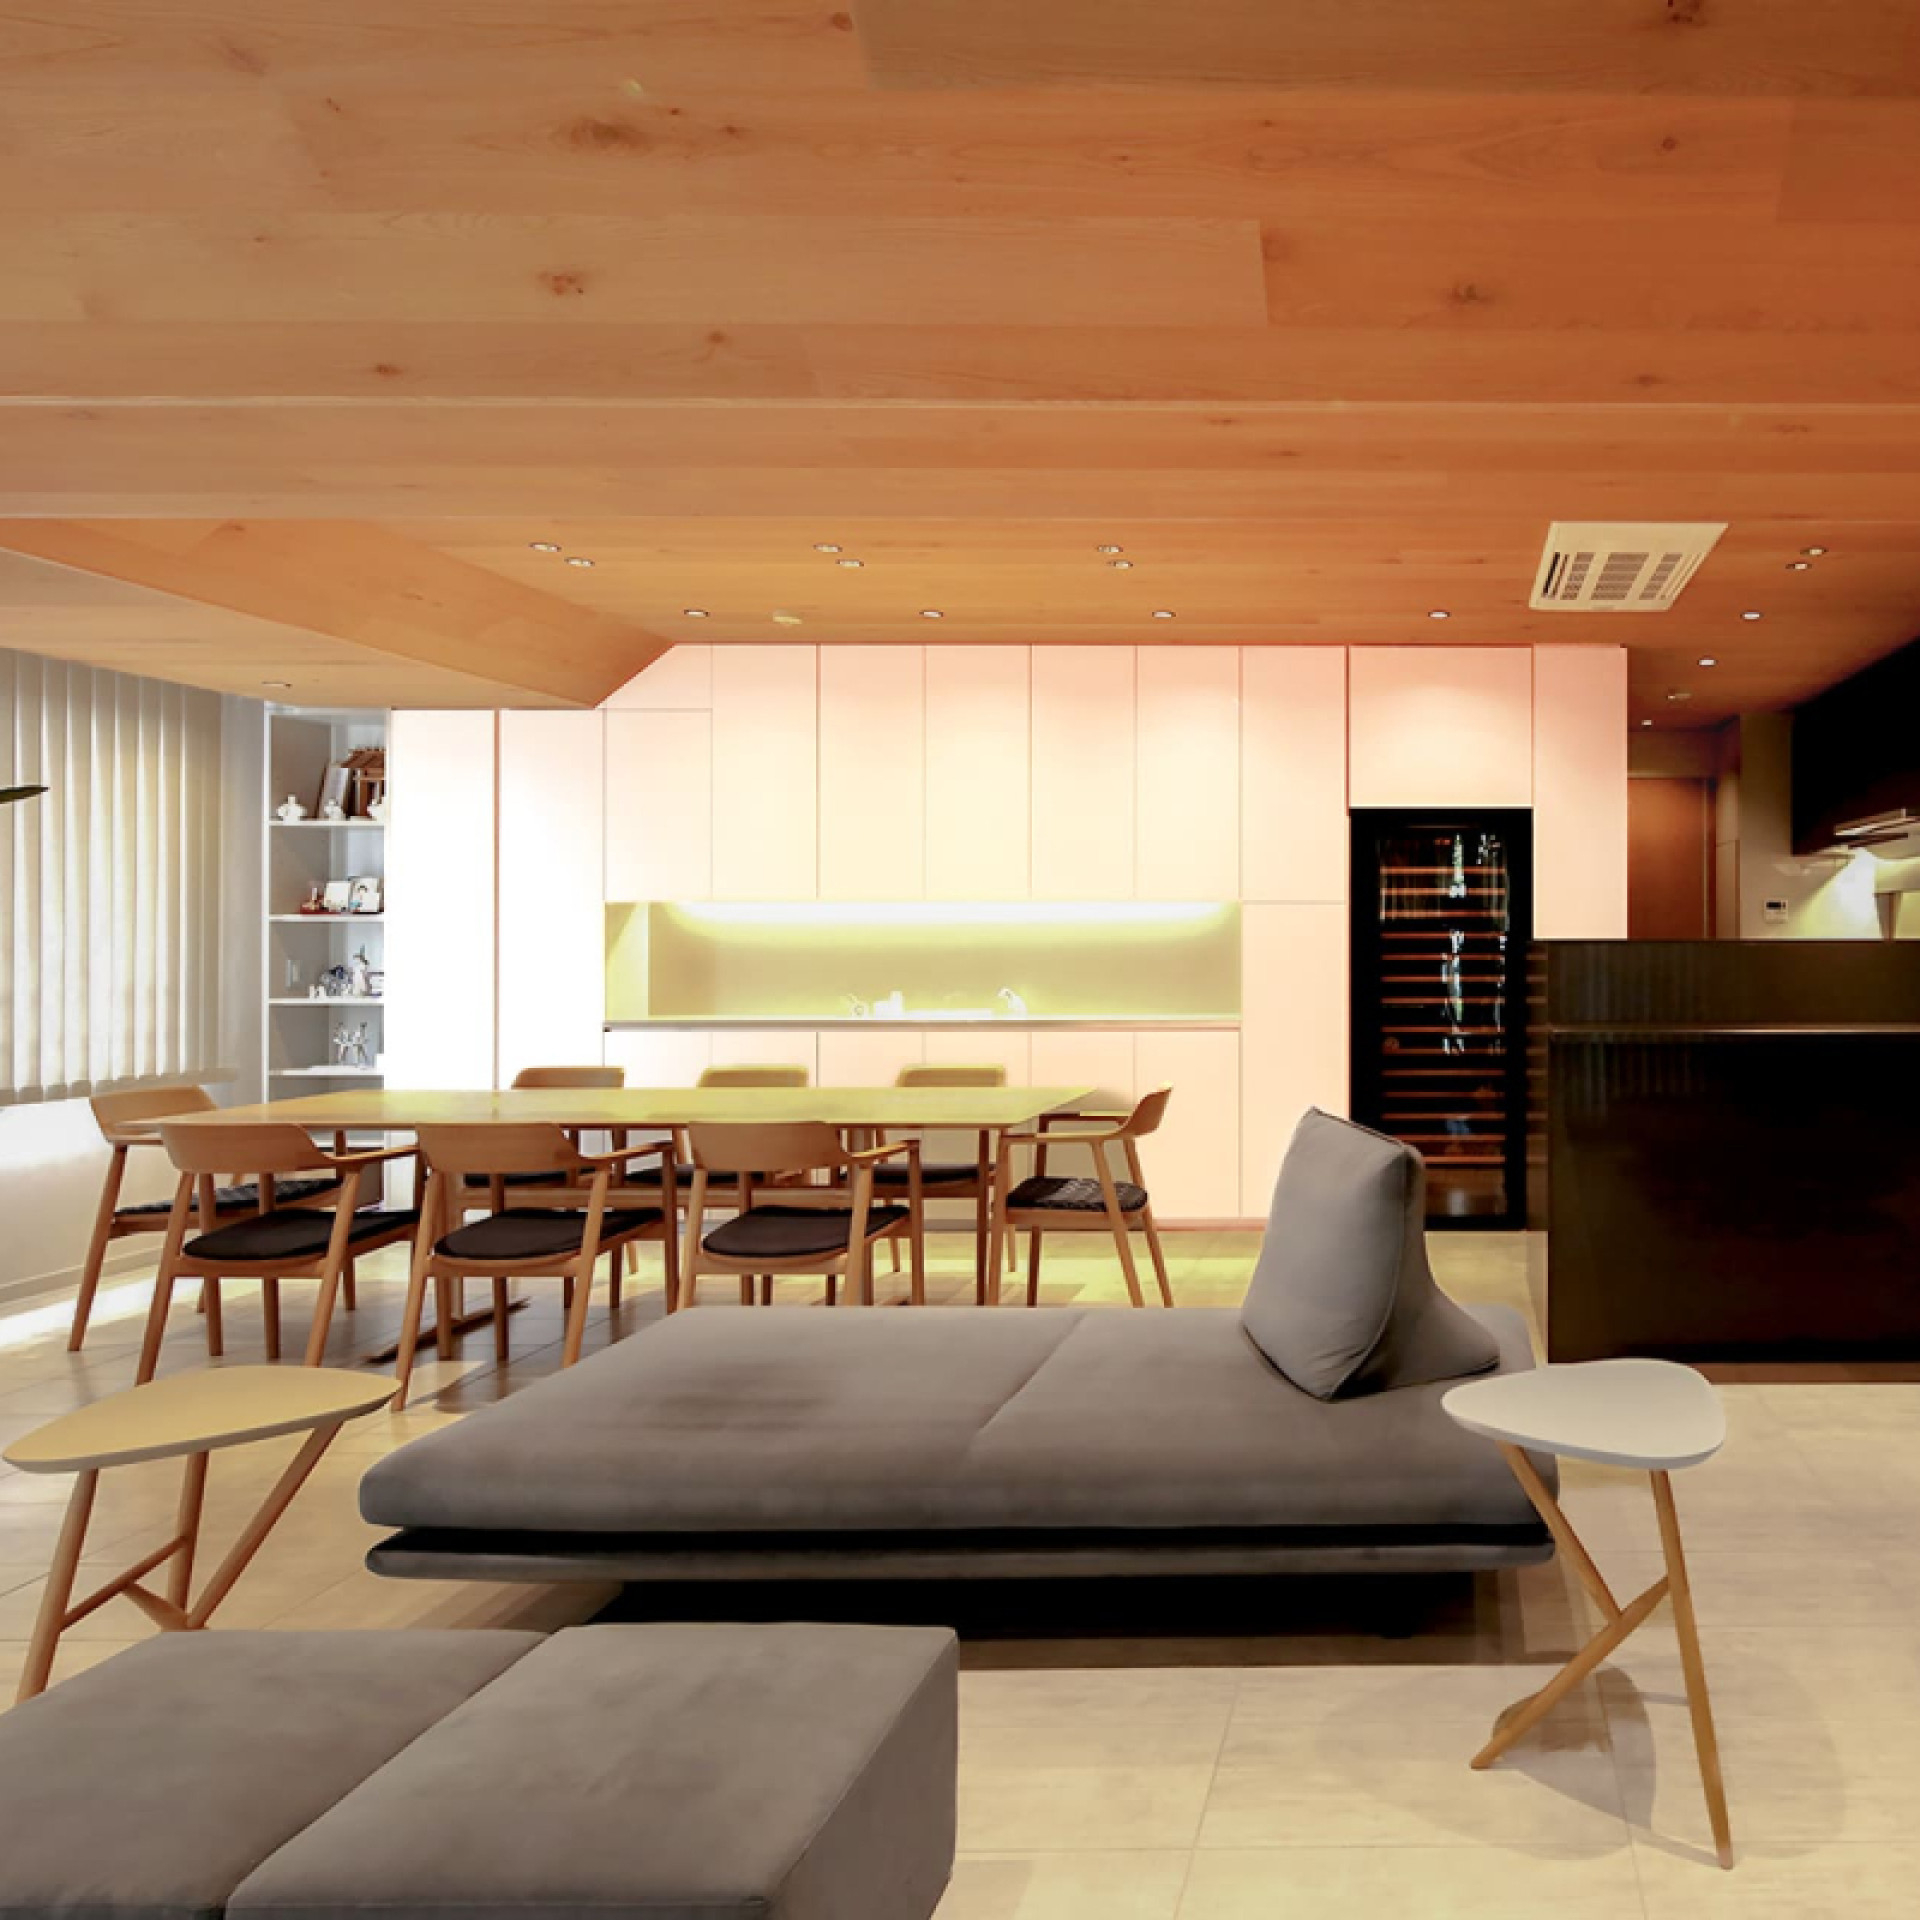 Projet de rénovation d’une maison japonaise à Tokyo. Une cave à vin intégrée dans un meuble sur-mesure dans la cuisine ouverte sur le salon.